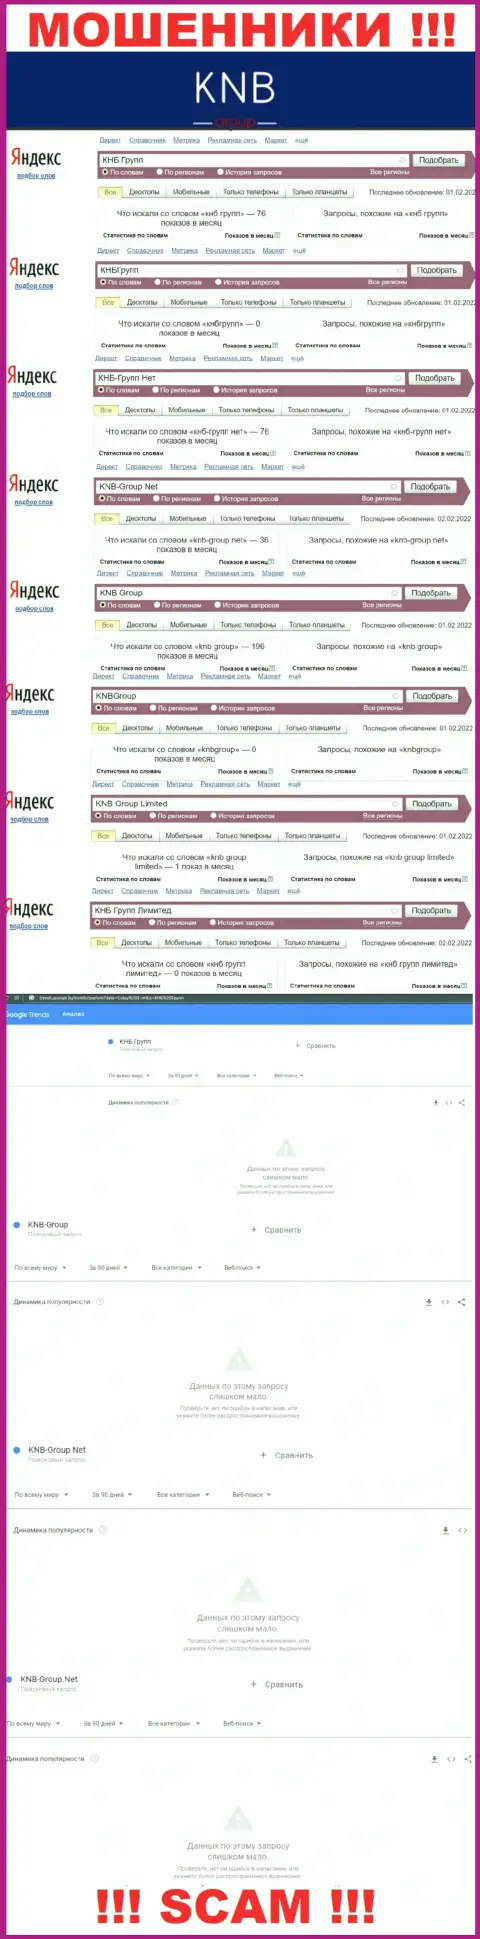 Скрин статистических показателей поисковых запросов по противоправно действующей организации KNB Group